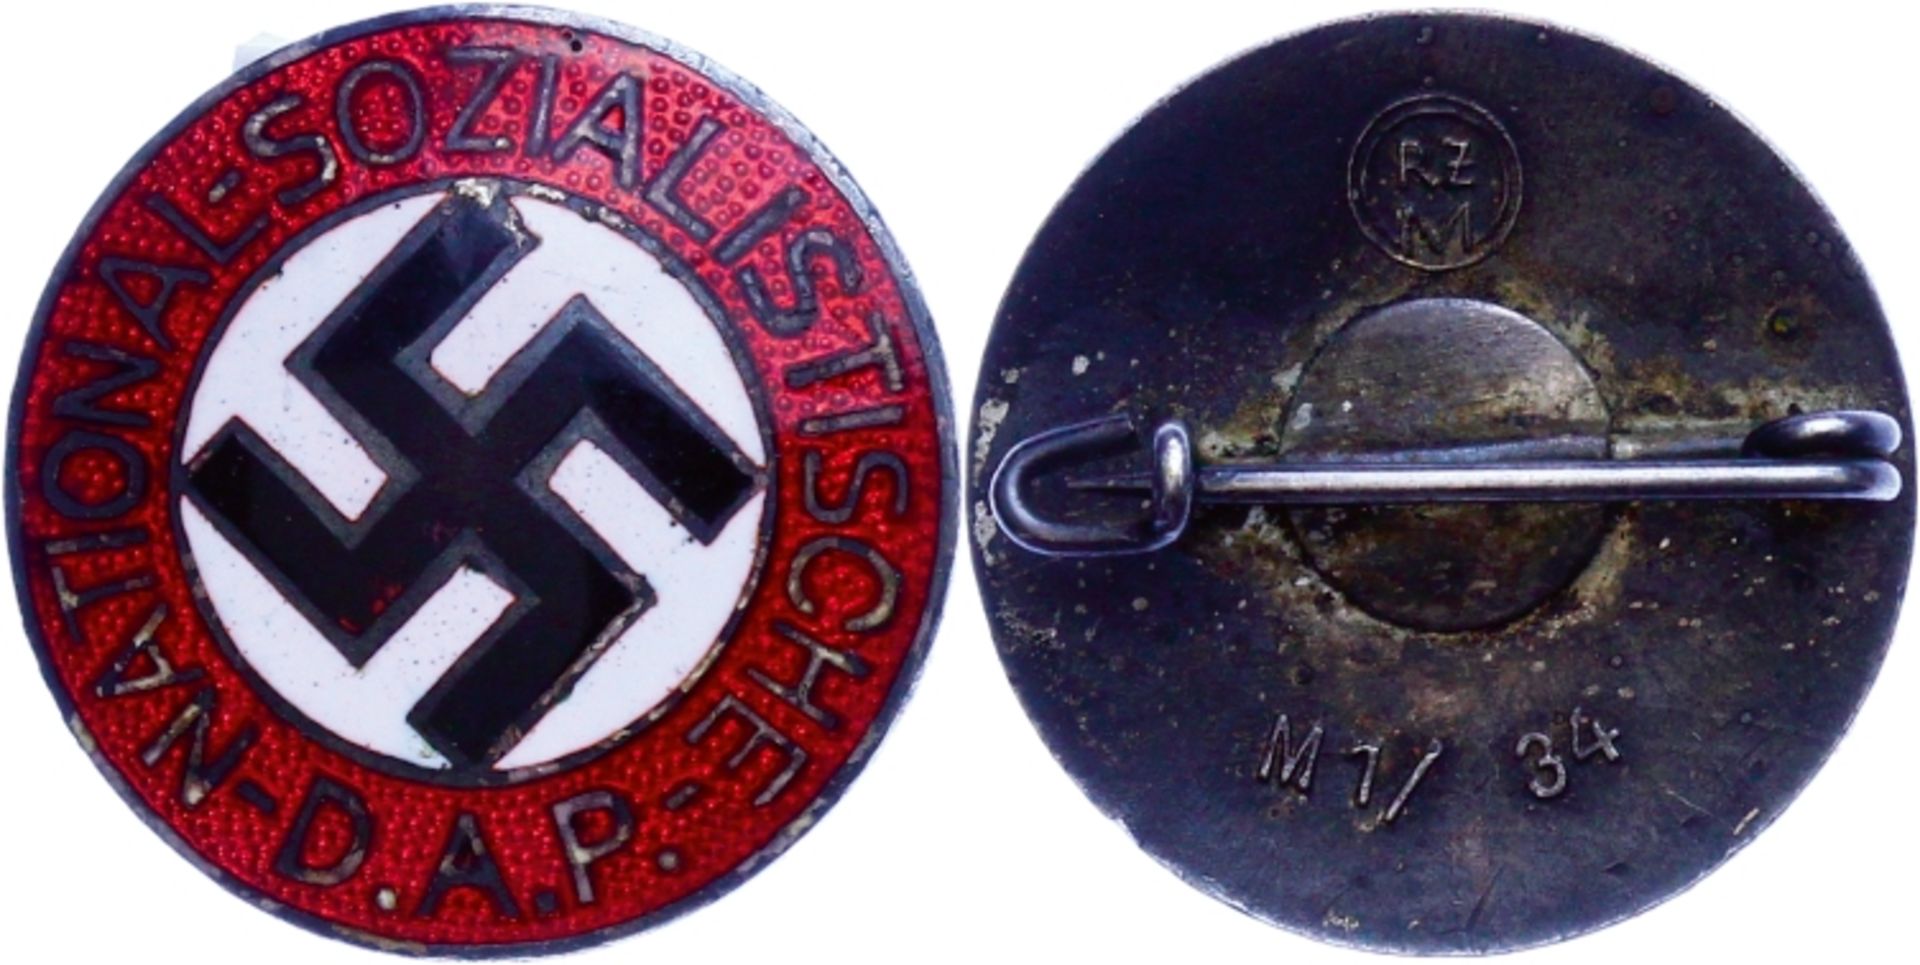 Kleinabzeichen, Mitgliedsnadeln 1871-1945 Nationalsozialistische Deutsche Arbeiterpartei (NSDAP),